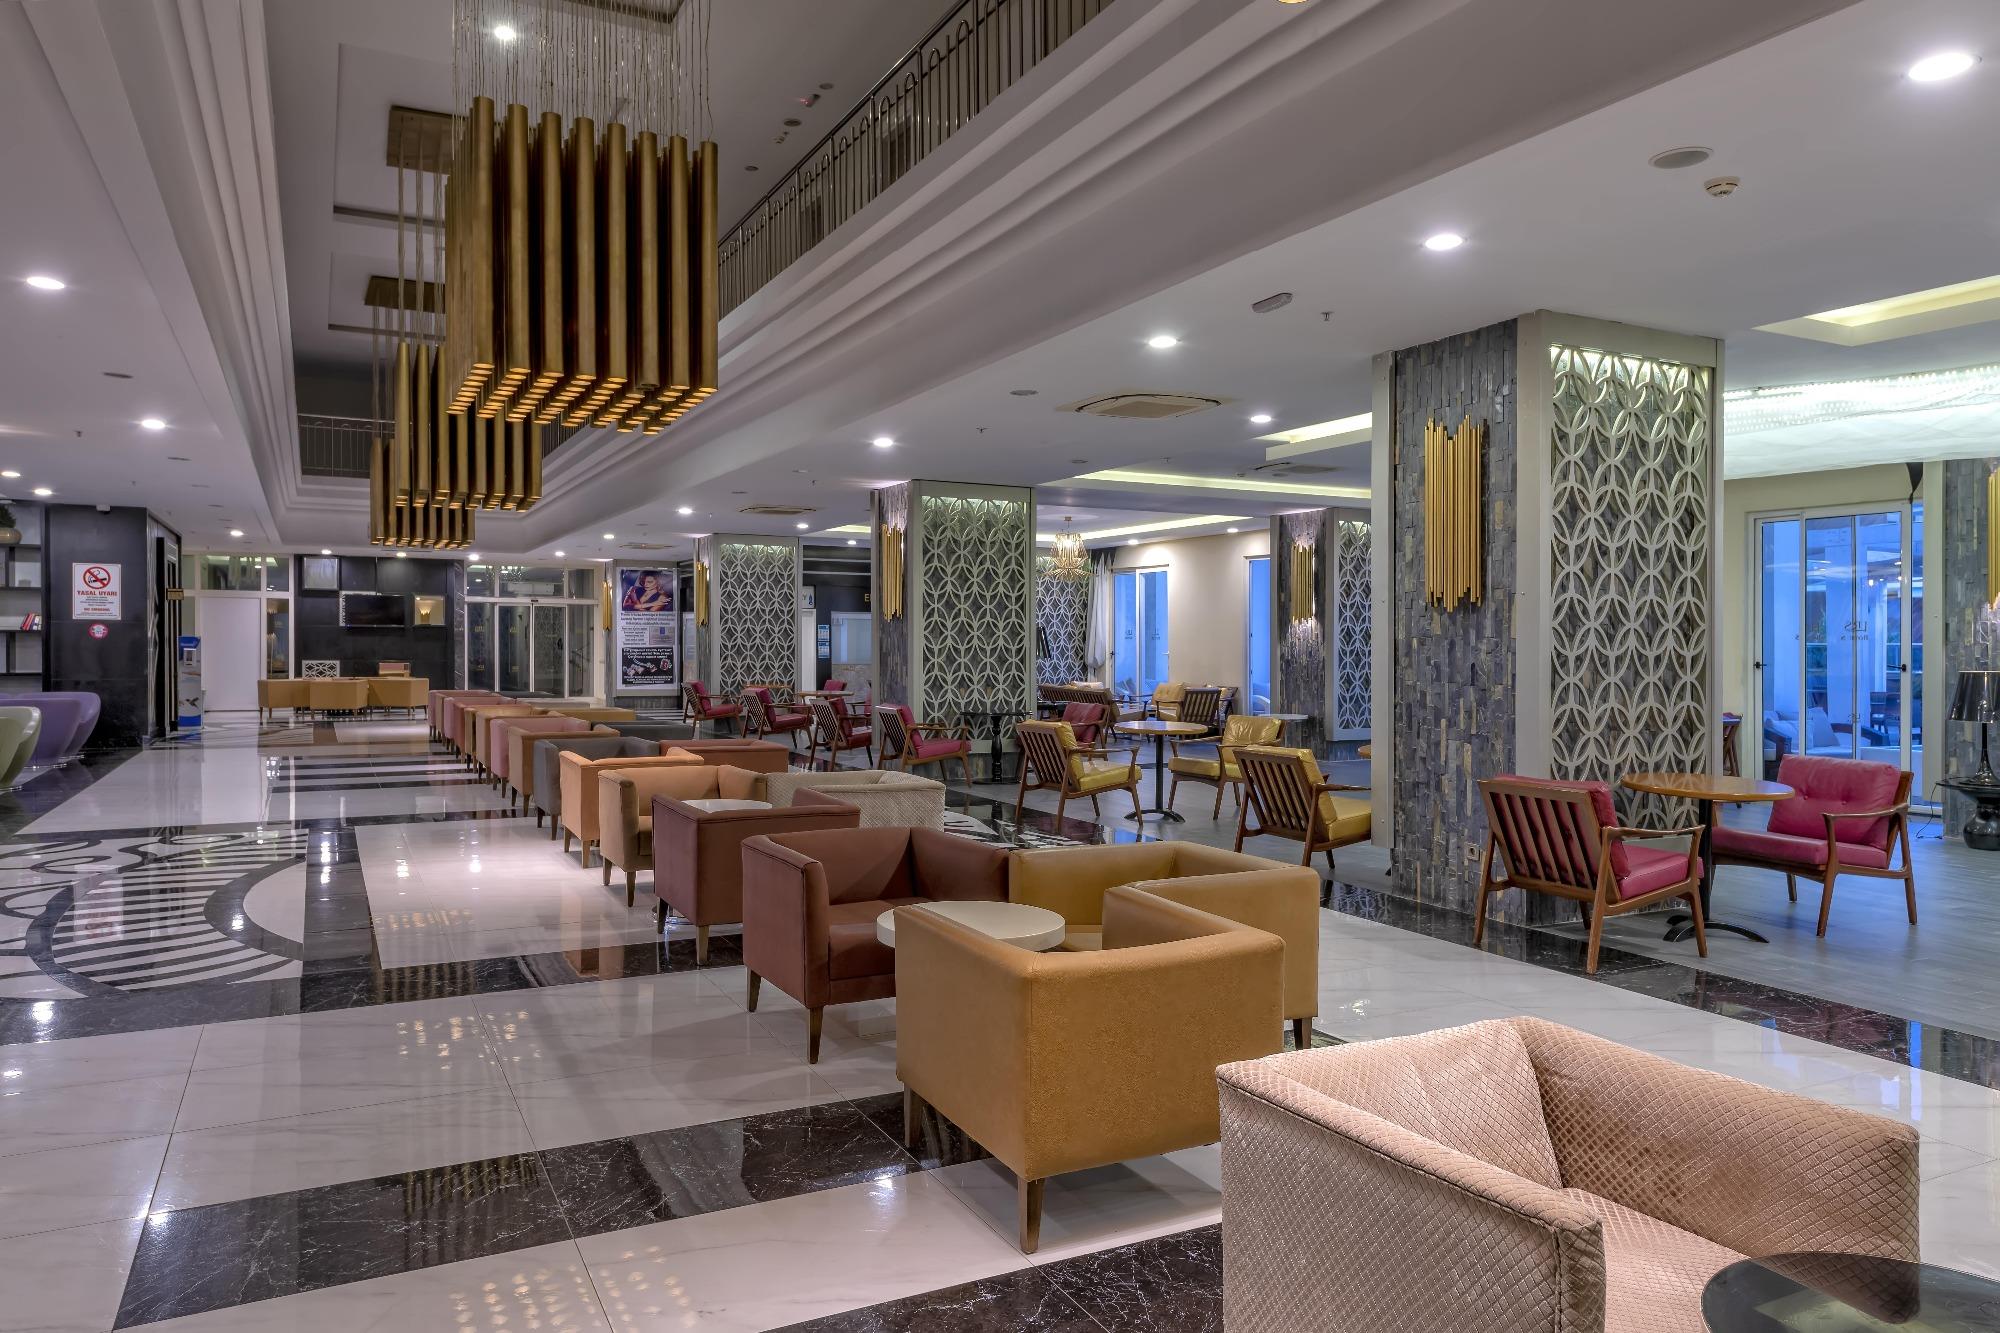 Port River Hotel & Spa 5* (Титрейенгёль, Турция) - цены, отзывы, фото,  бронирование - ПАКС